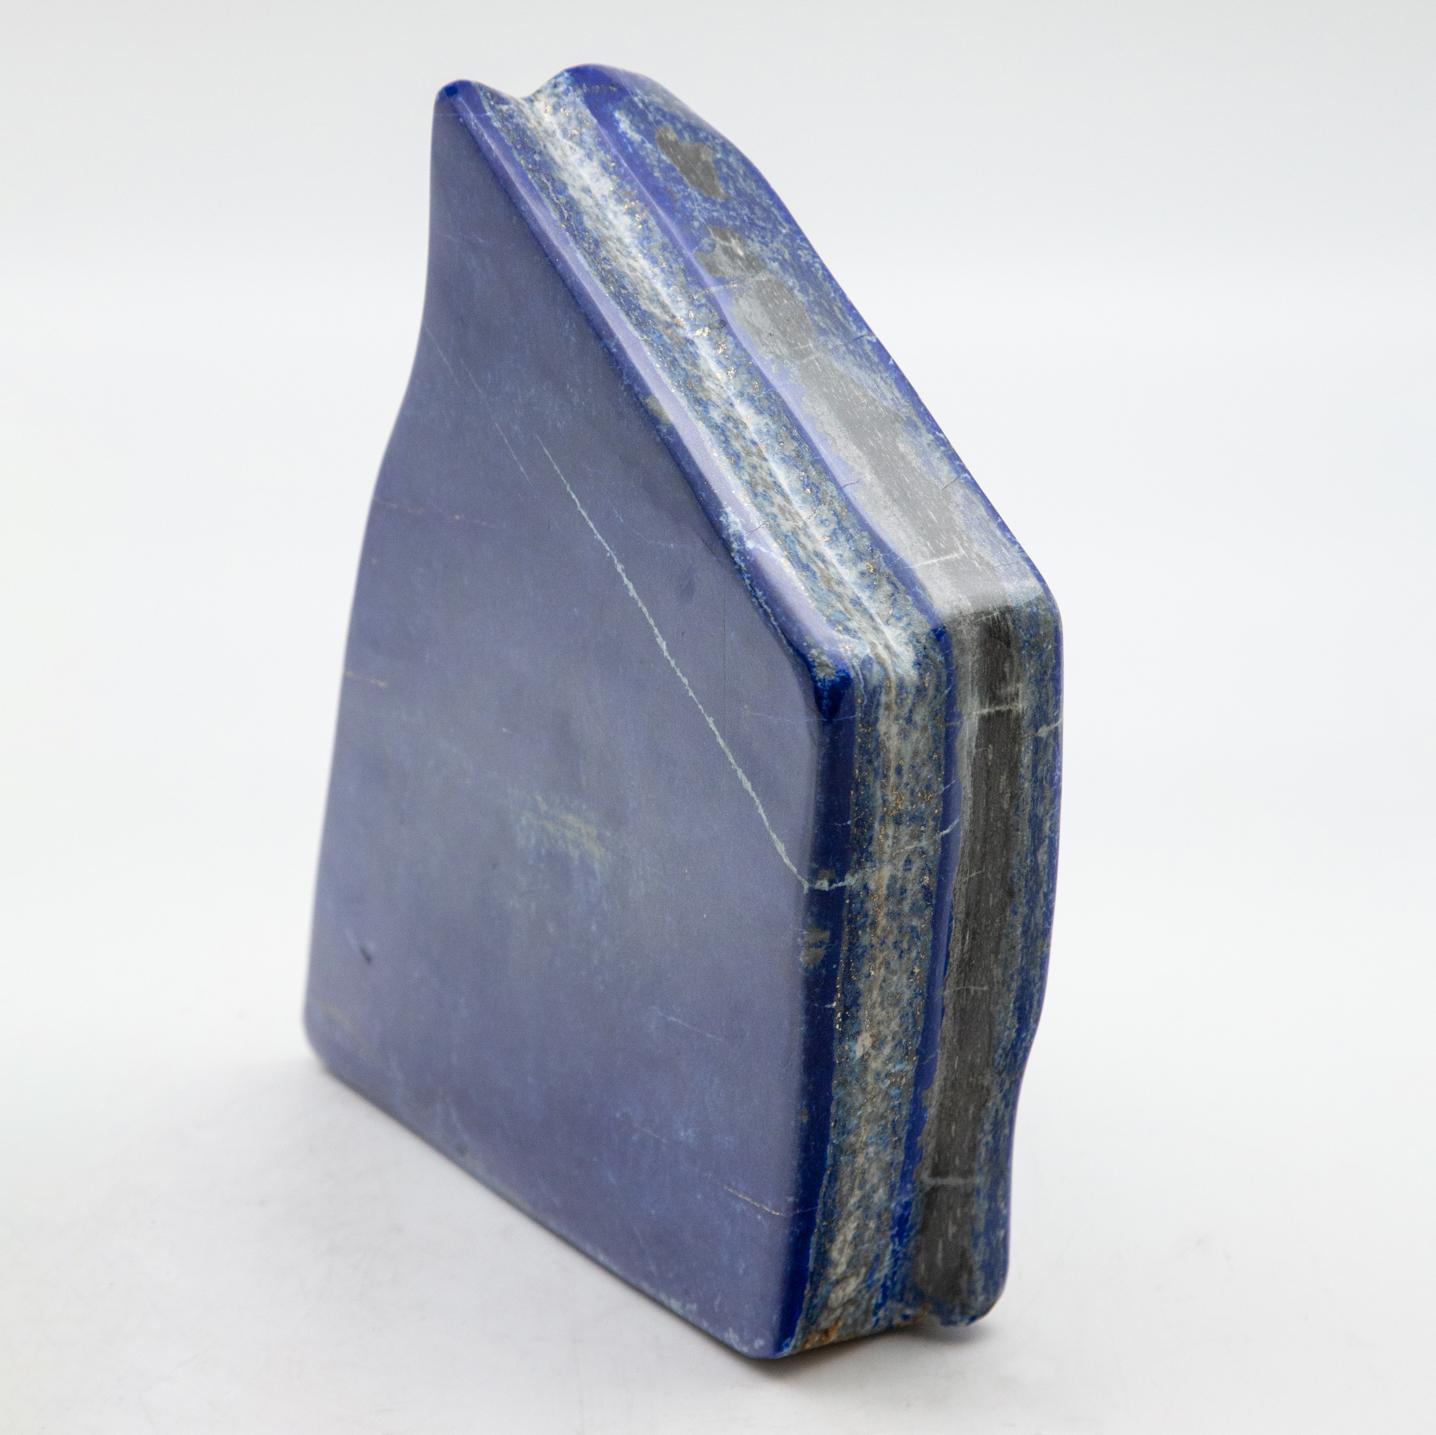 Medium Lapis Lazuli Specimen. Highly polished. Measures: 7.5